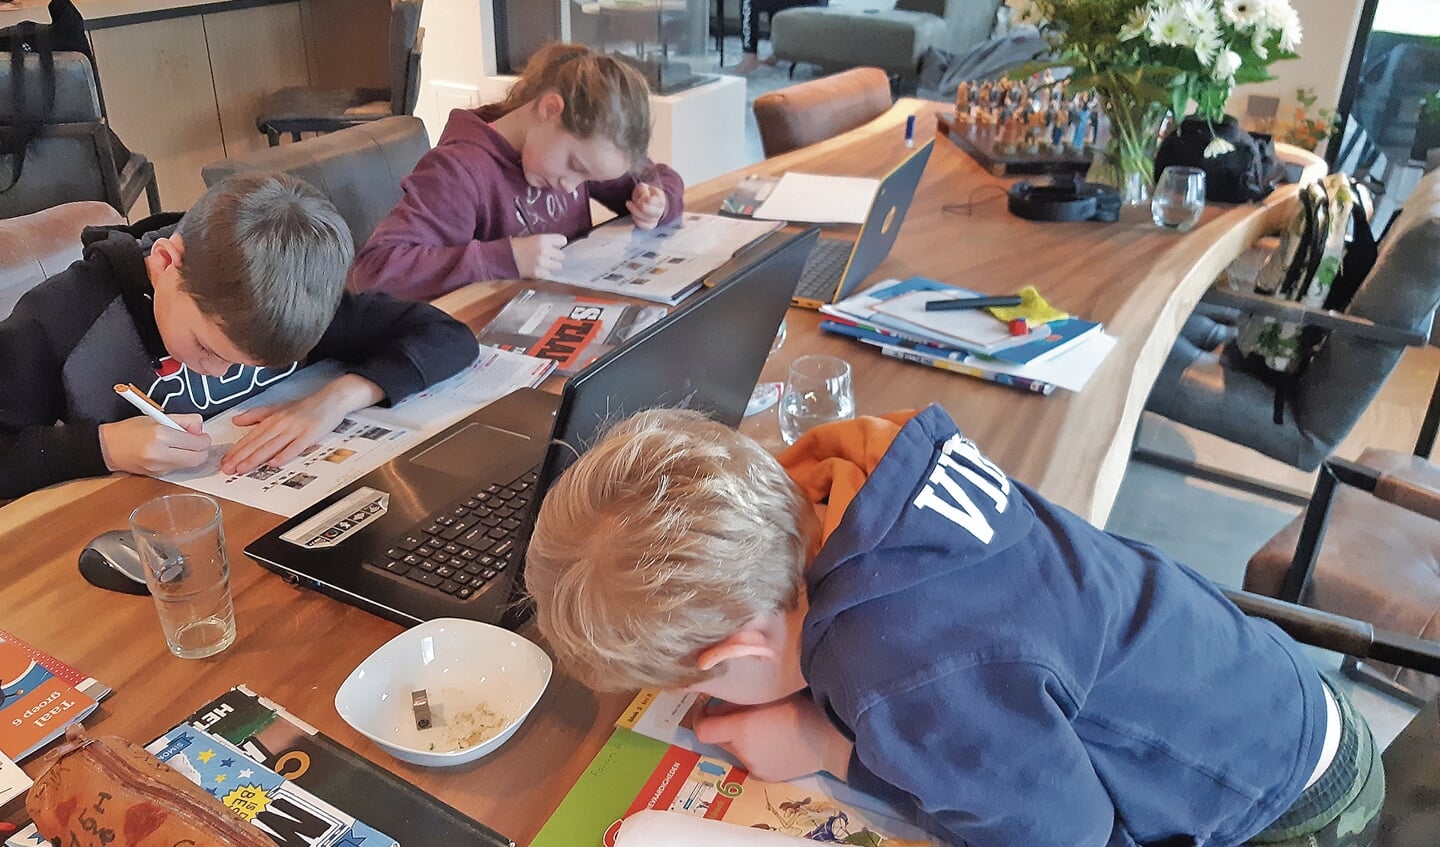 De kinderen zijn bij Marjolein druk bezig met hun schoolwerk.